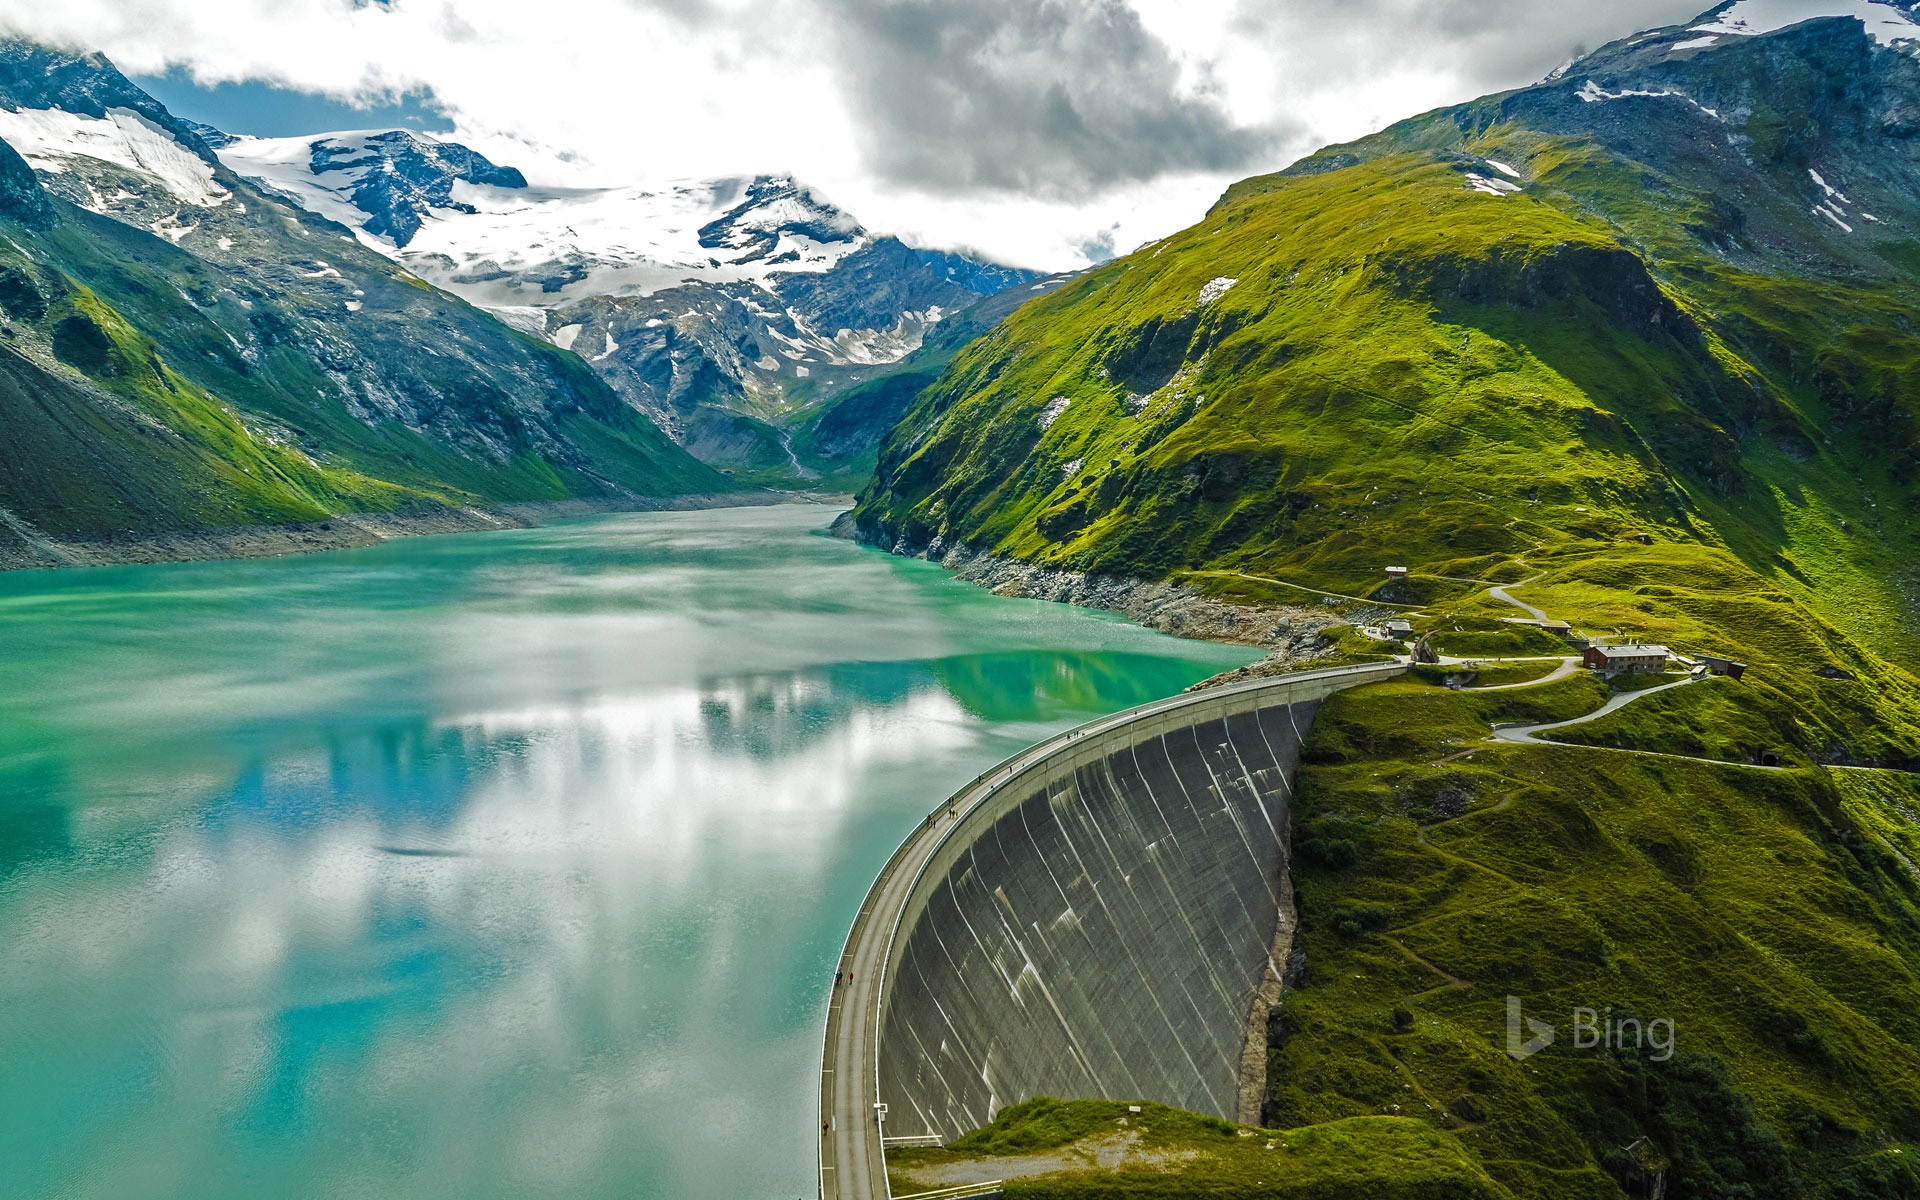 papier peint terbaik,paysage naturel,la nature,ressources en eau,fjord,montagne